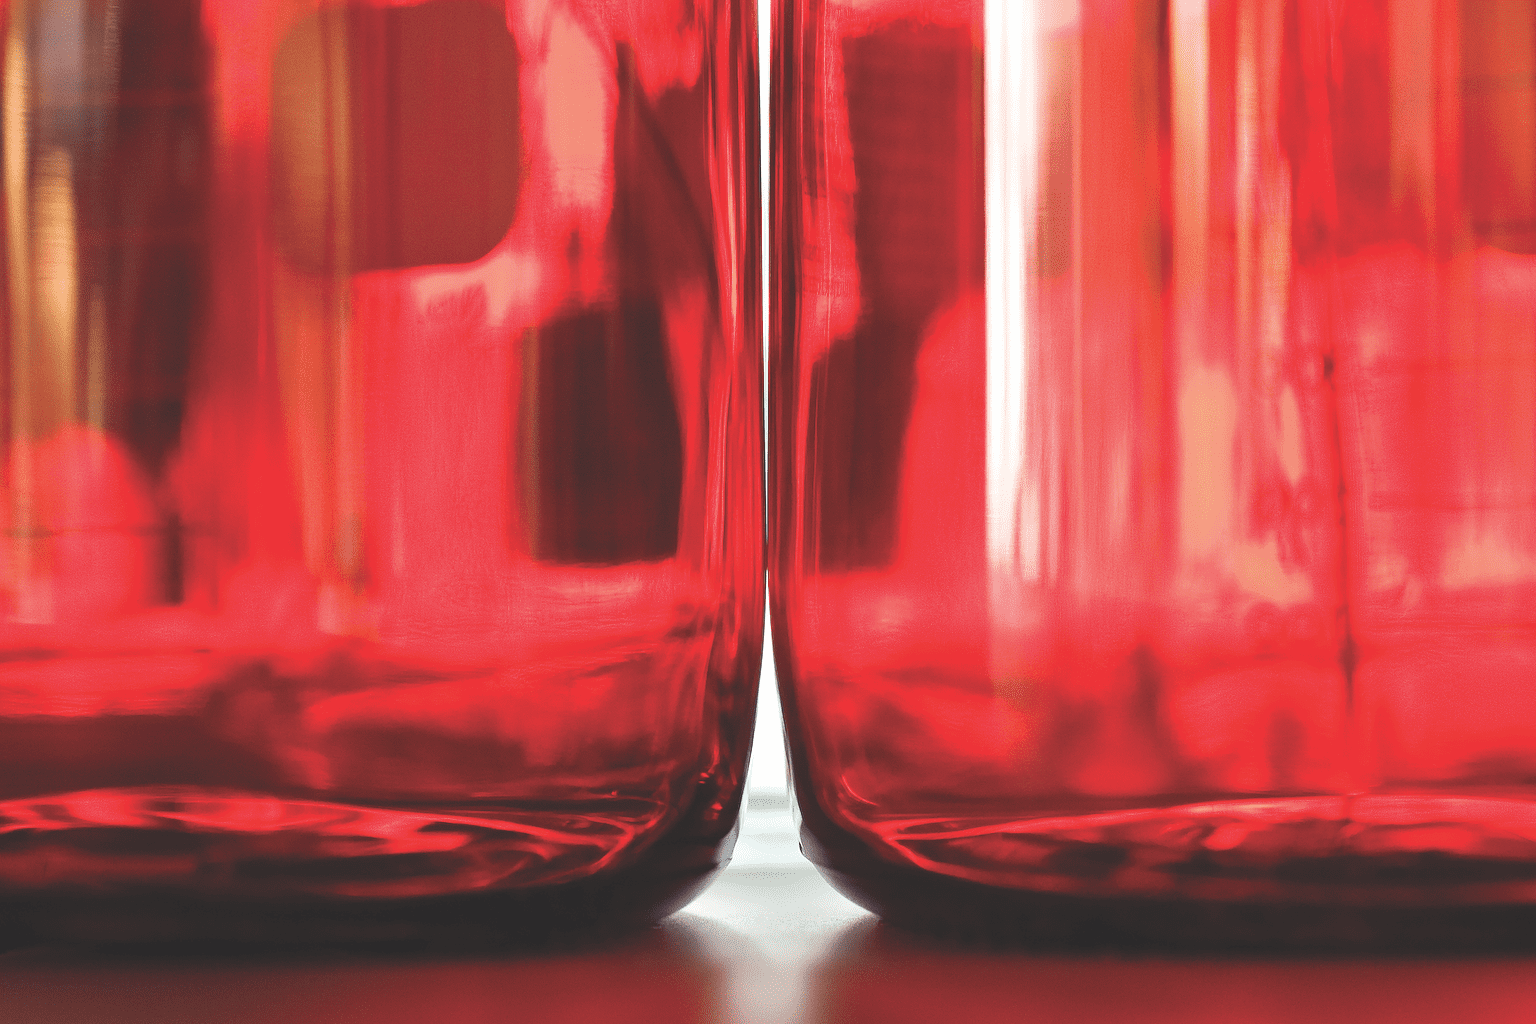 Dos recipientes de líquido rojo.